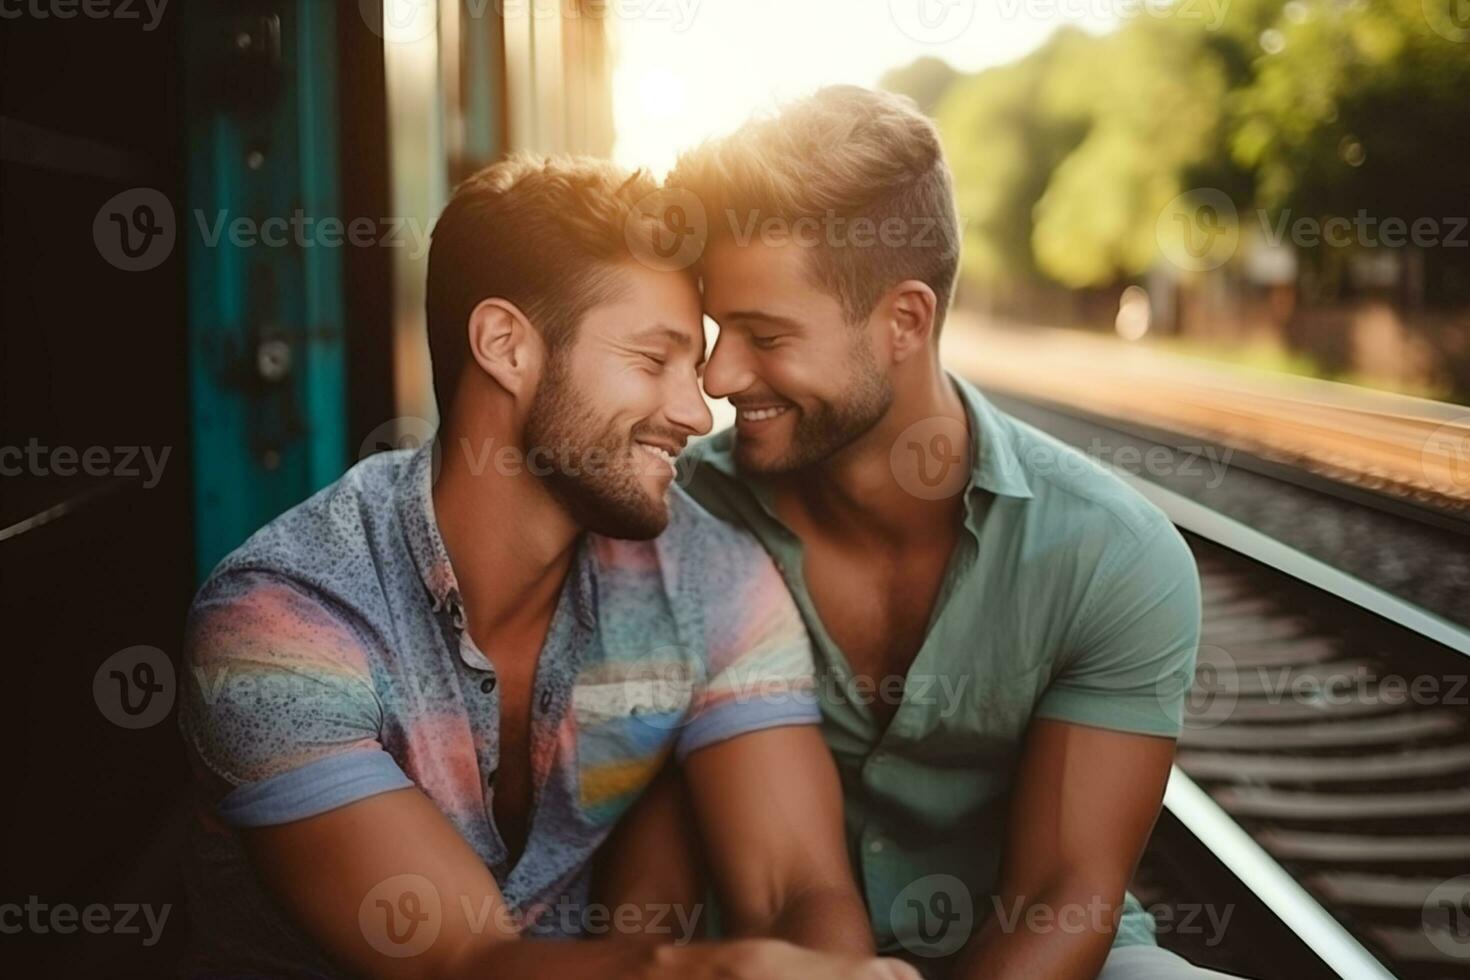 contento gay lgbtq mismo sexo Pareja demostración amor y afecto a cada otro foto